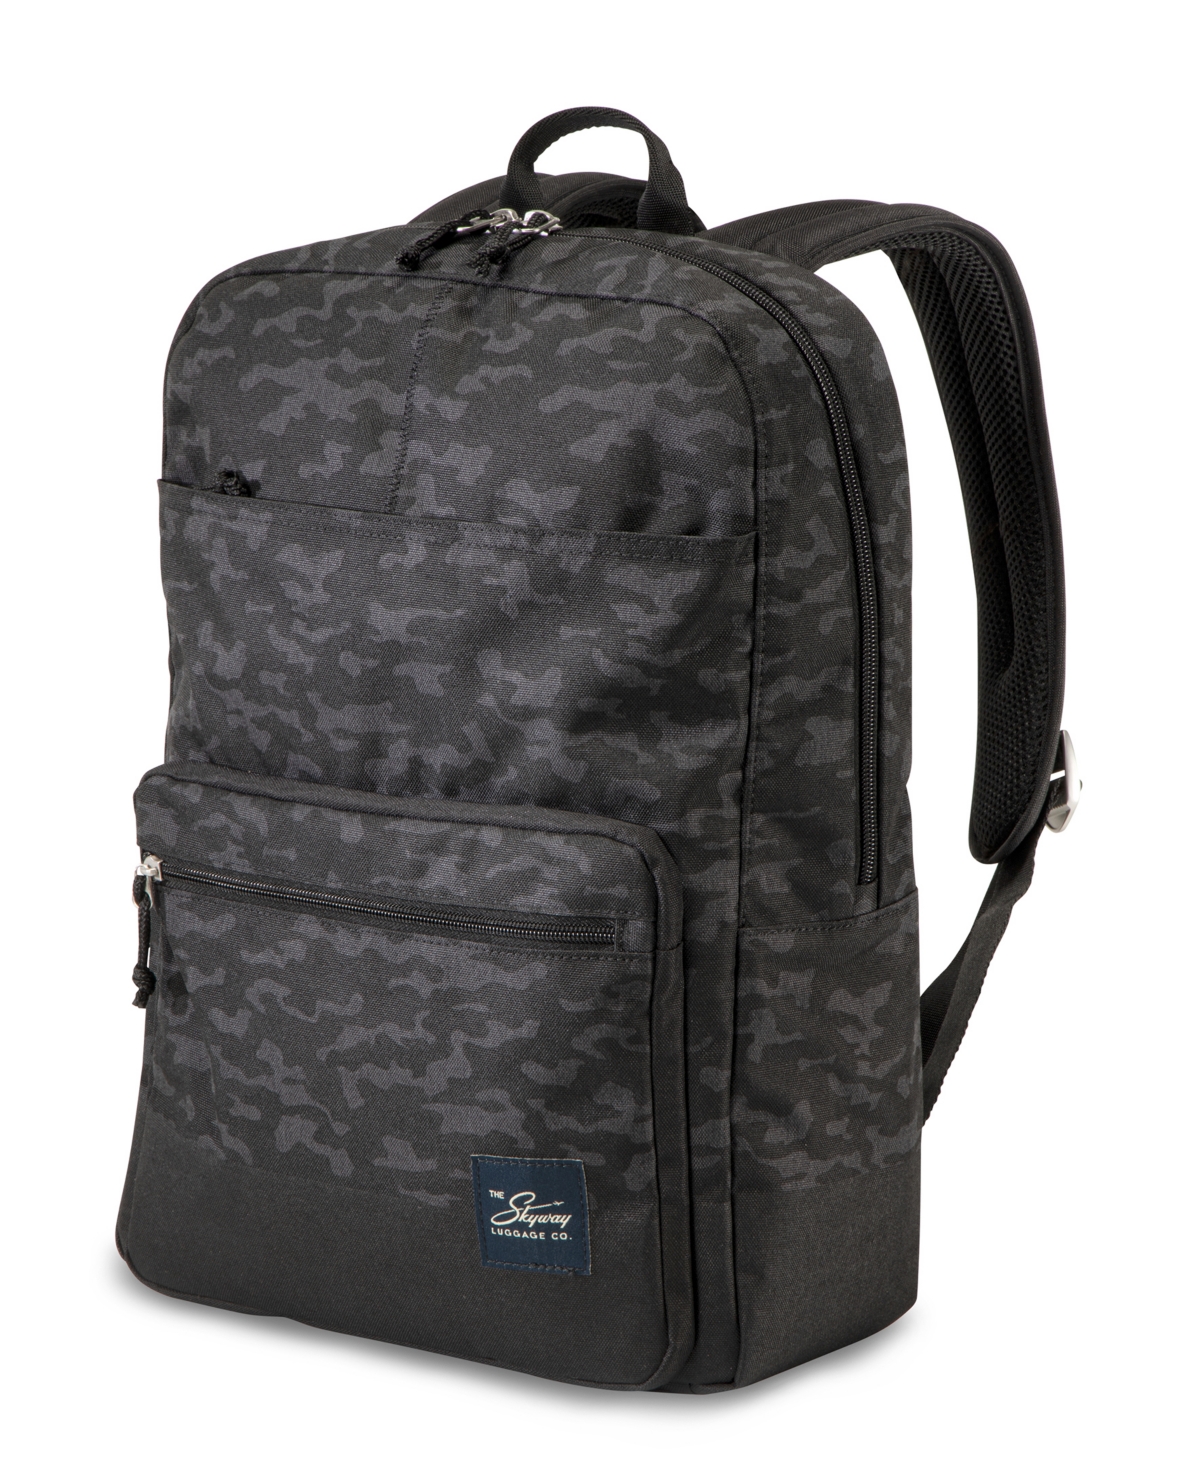 Skyway Rainier Simple Backpack, 16" In Kohala Black